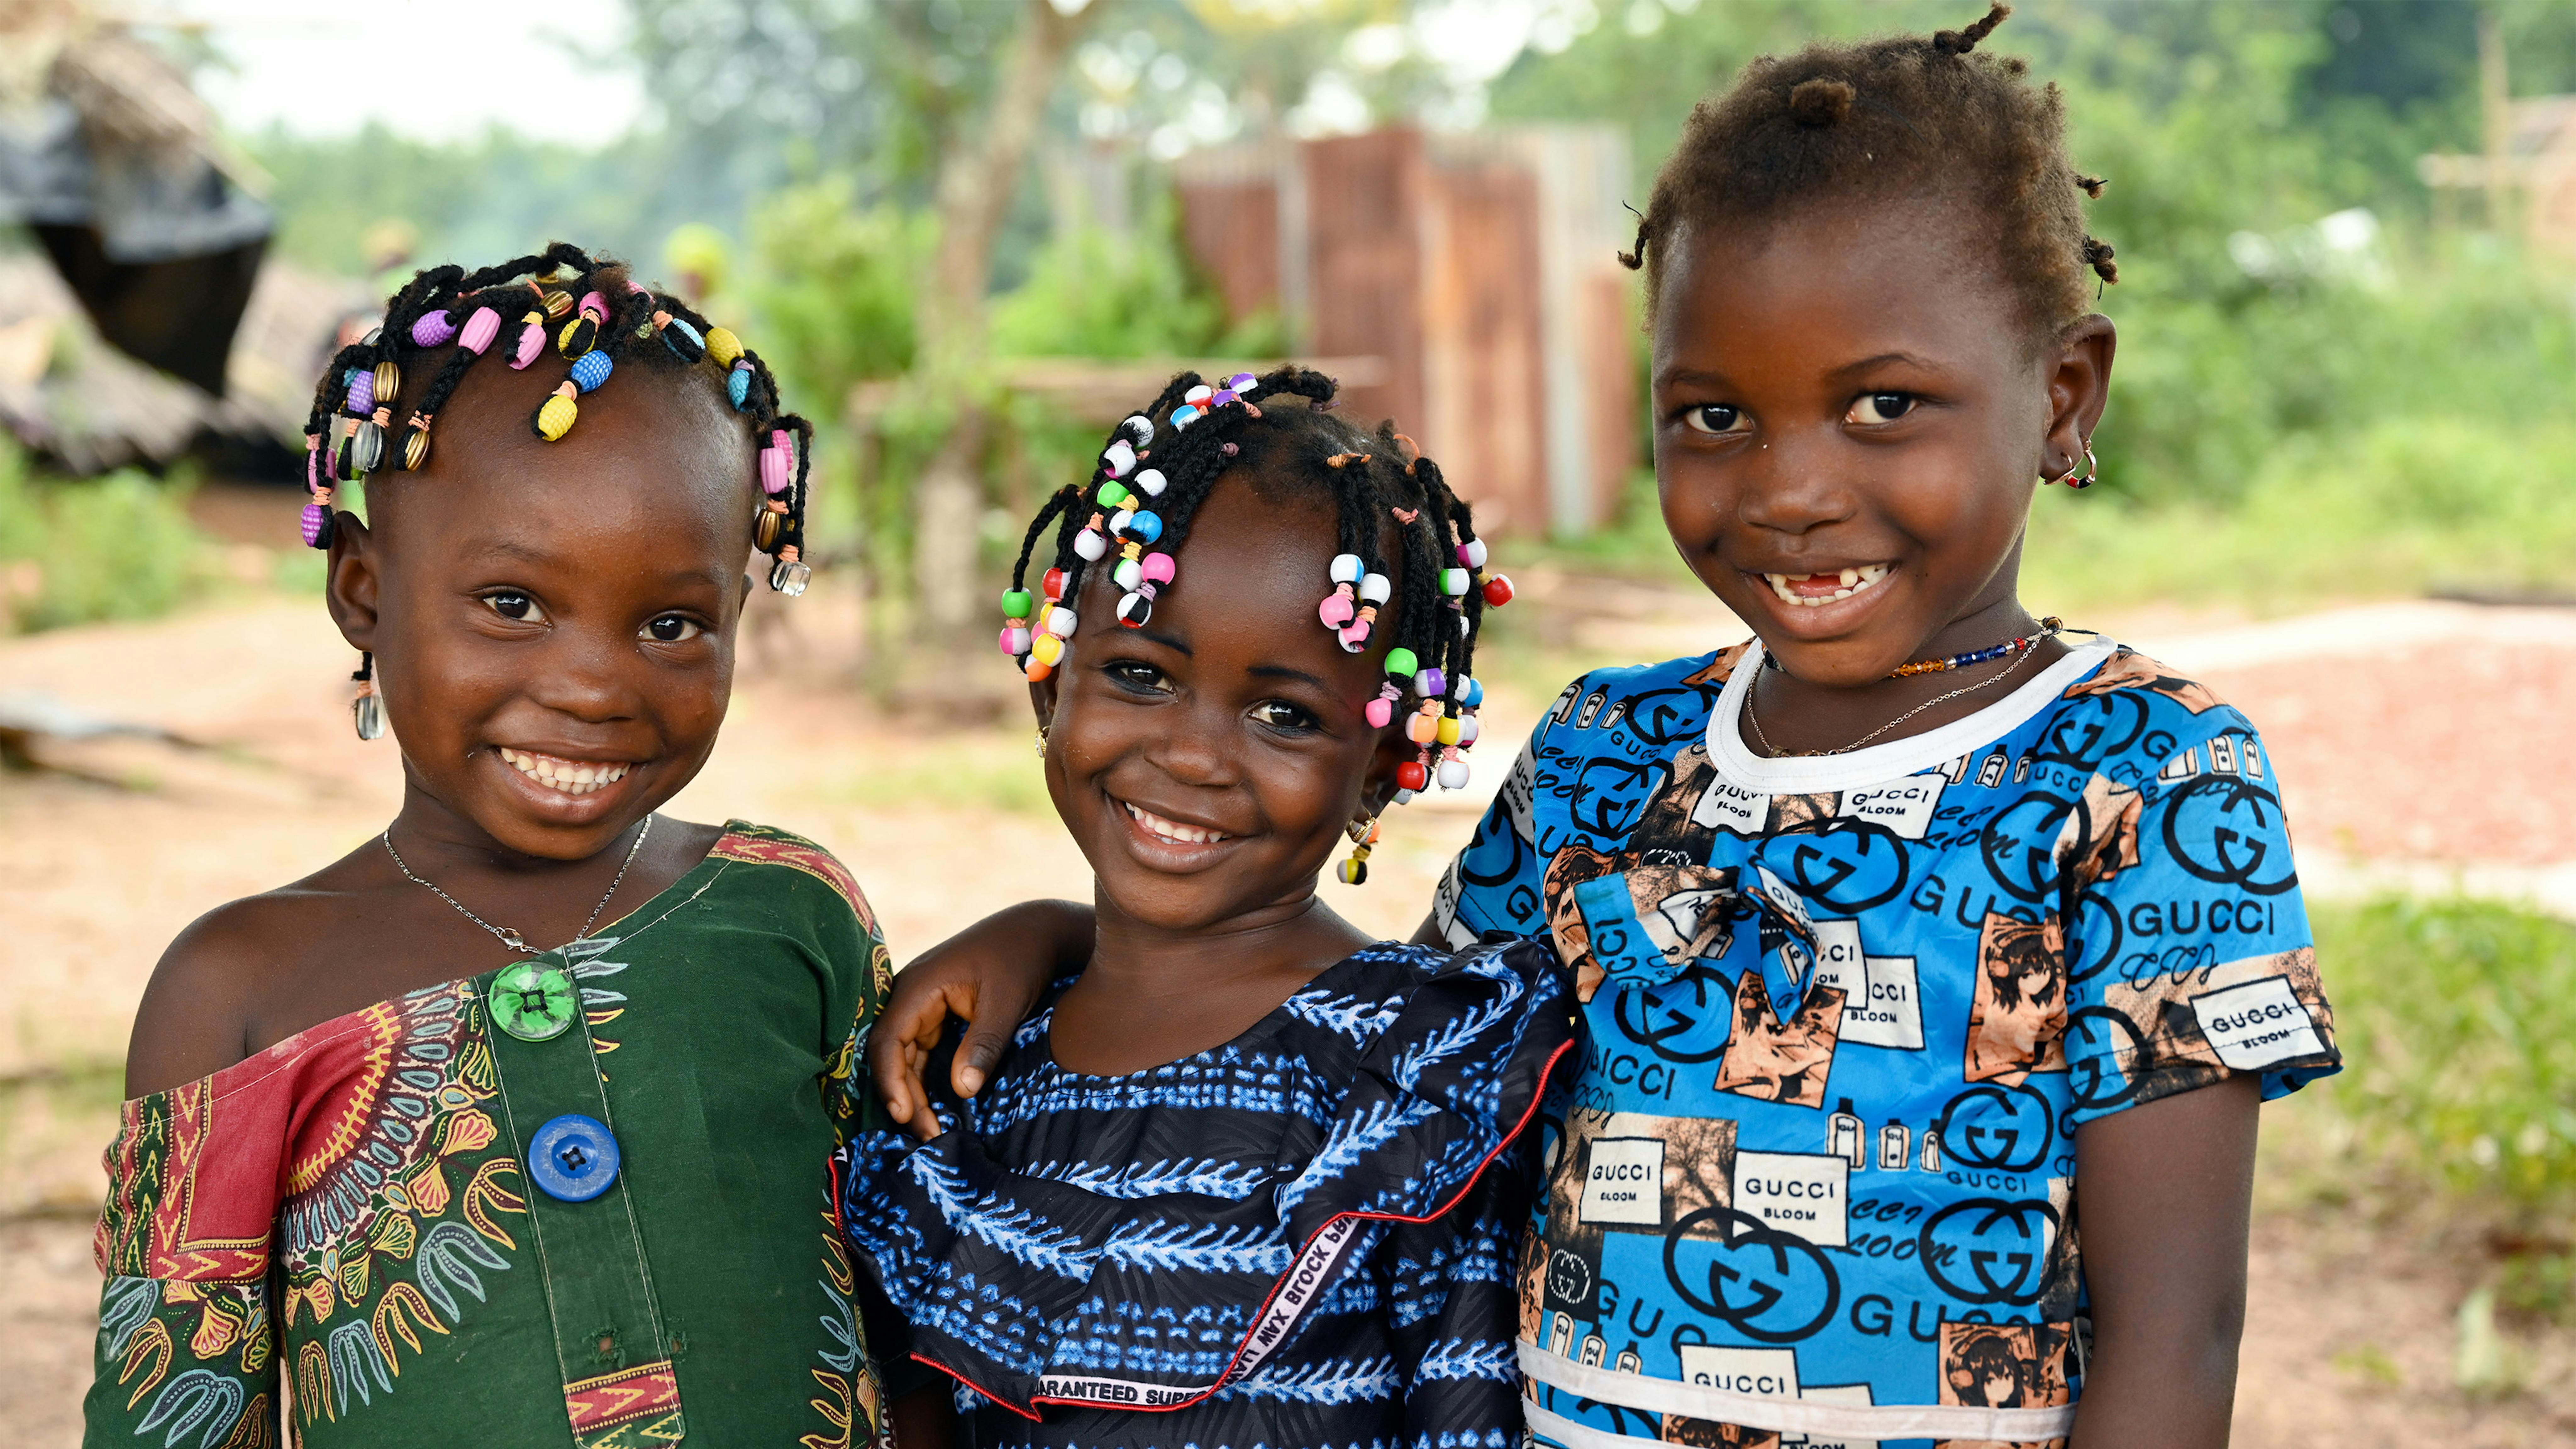 Costa d'Avorio - Bambini felici nel villaggio di Koda-Dialoubougou, Per ogni bambino un sorriso.